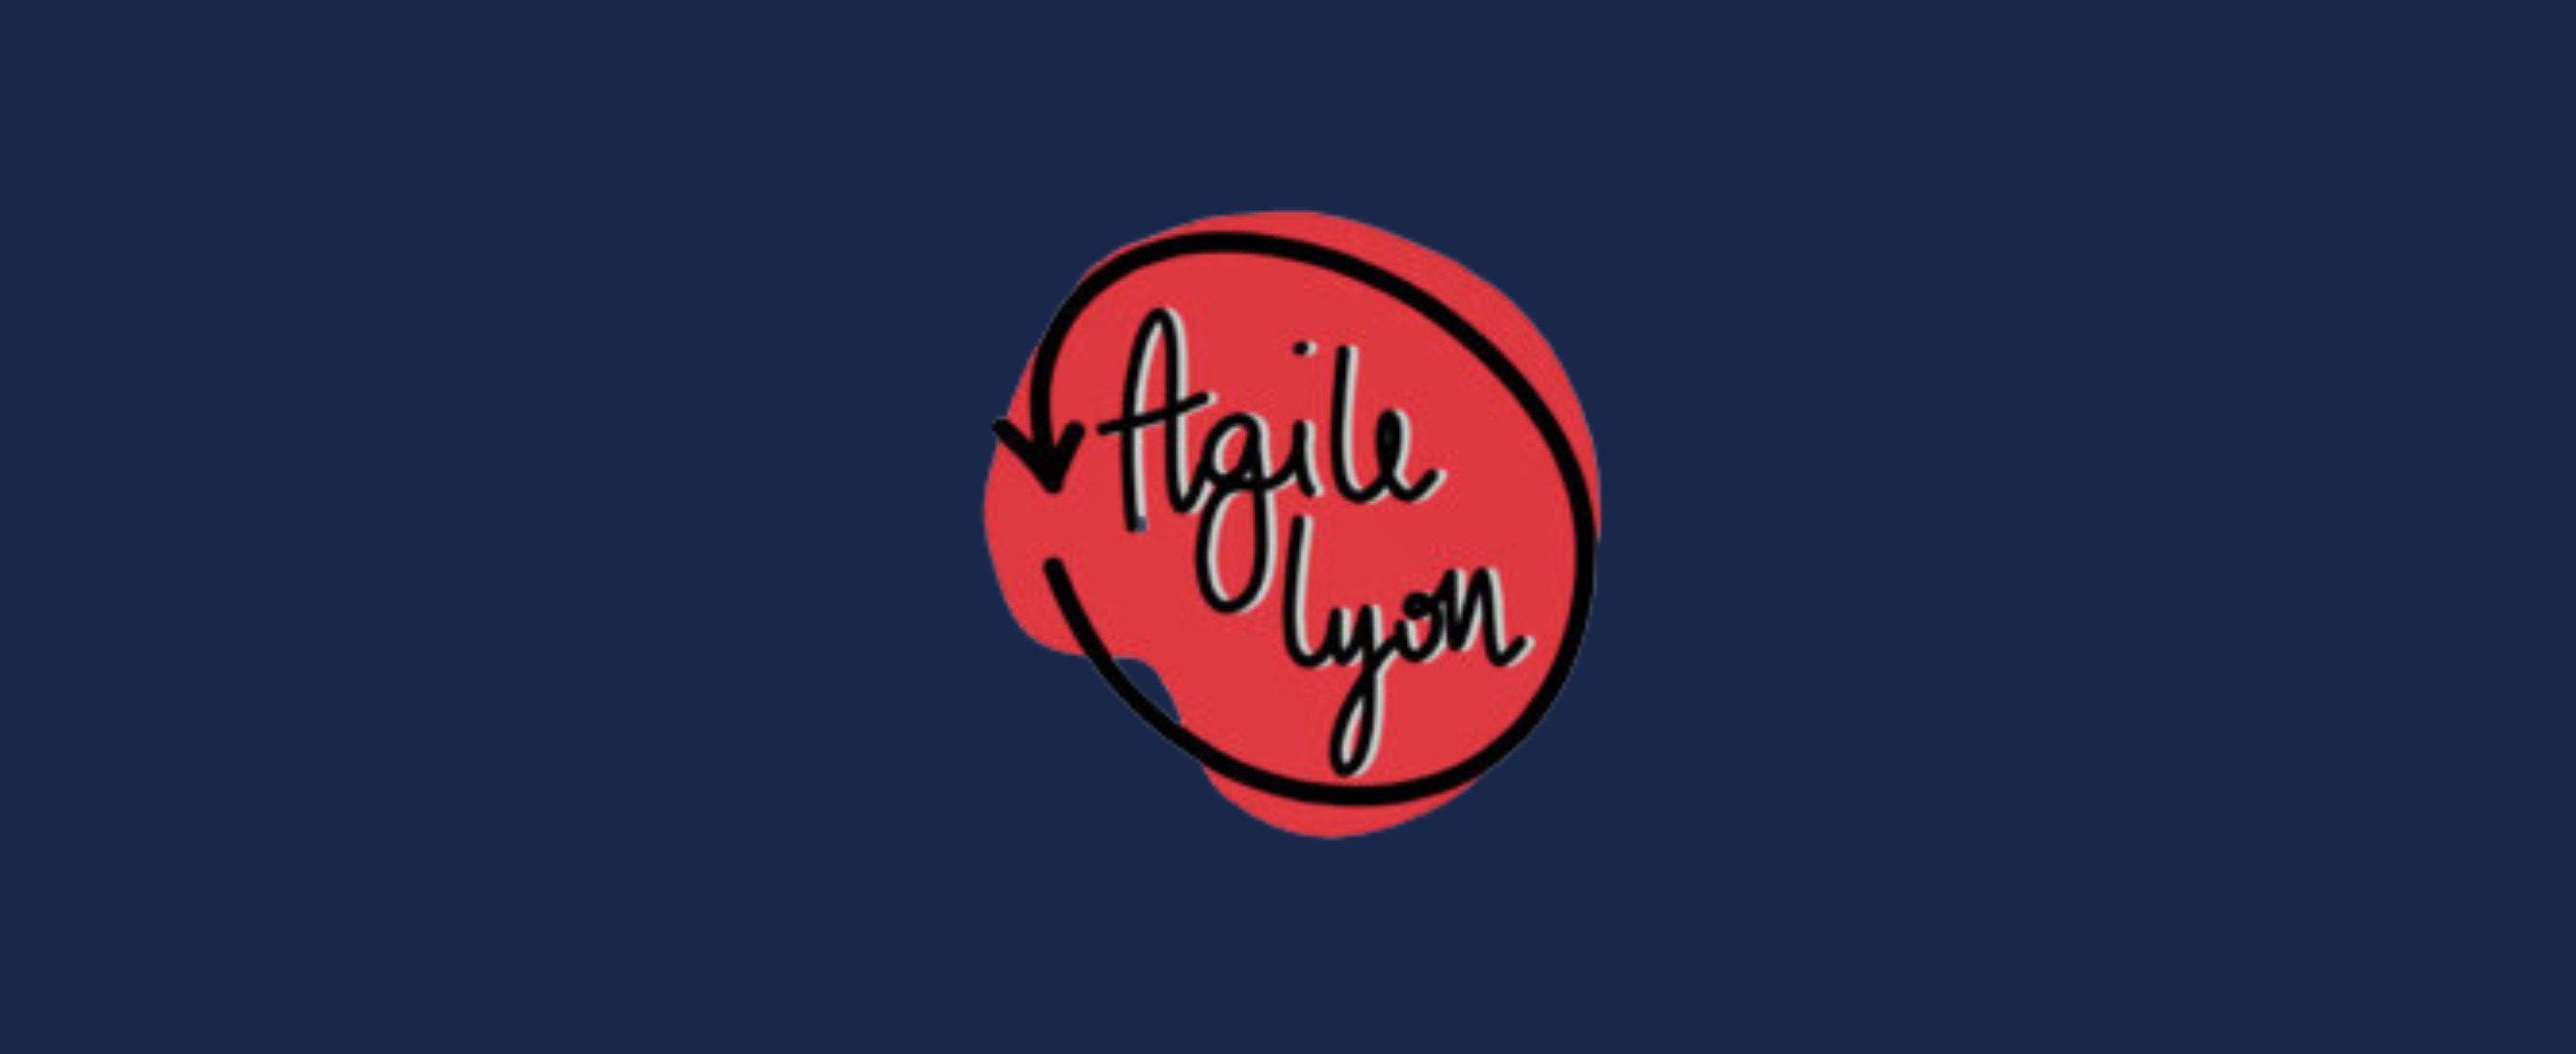 Conférences de l'Agile Lyon 2021 sur l'agilité en replay sur YouTube.